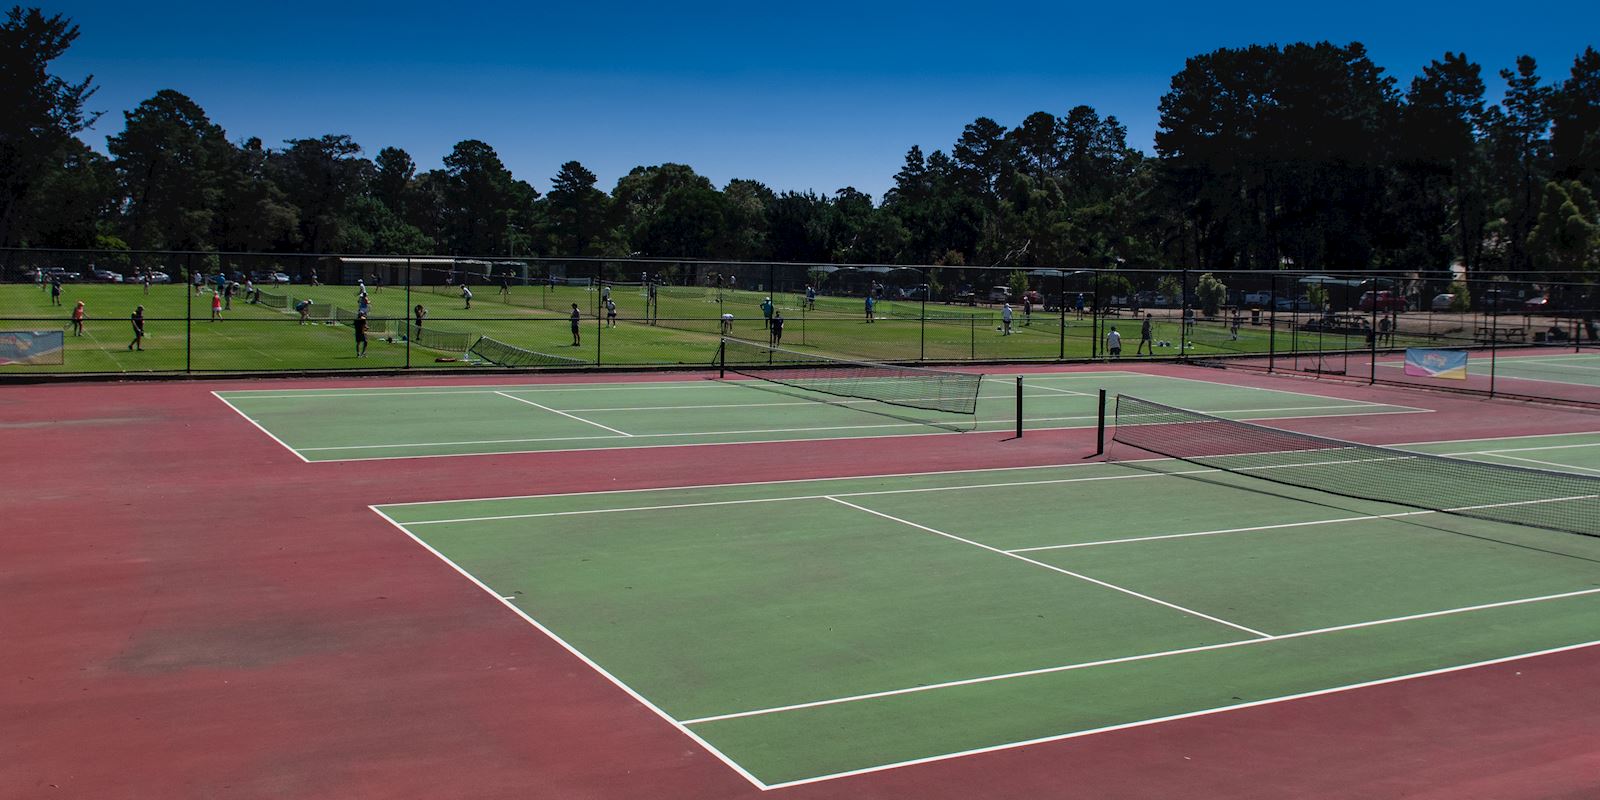 ClubSpark / Mt Prospect District Tennis Association / Mt Prospect Tennis